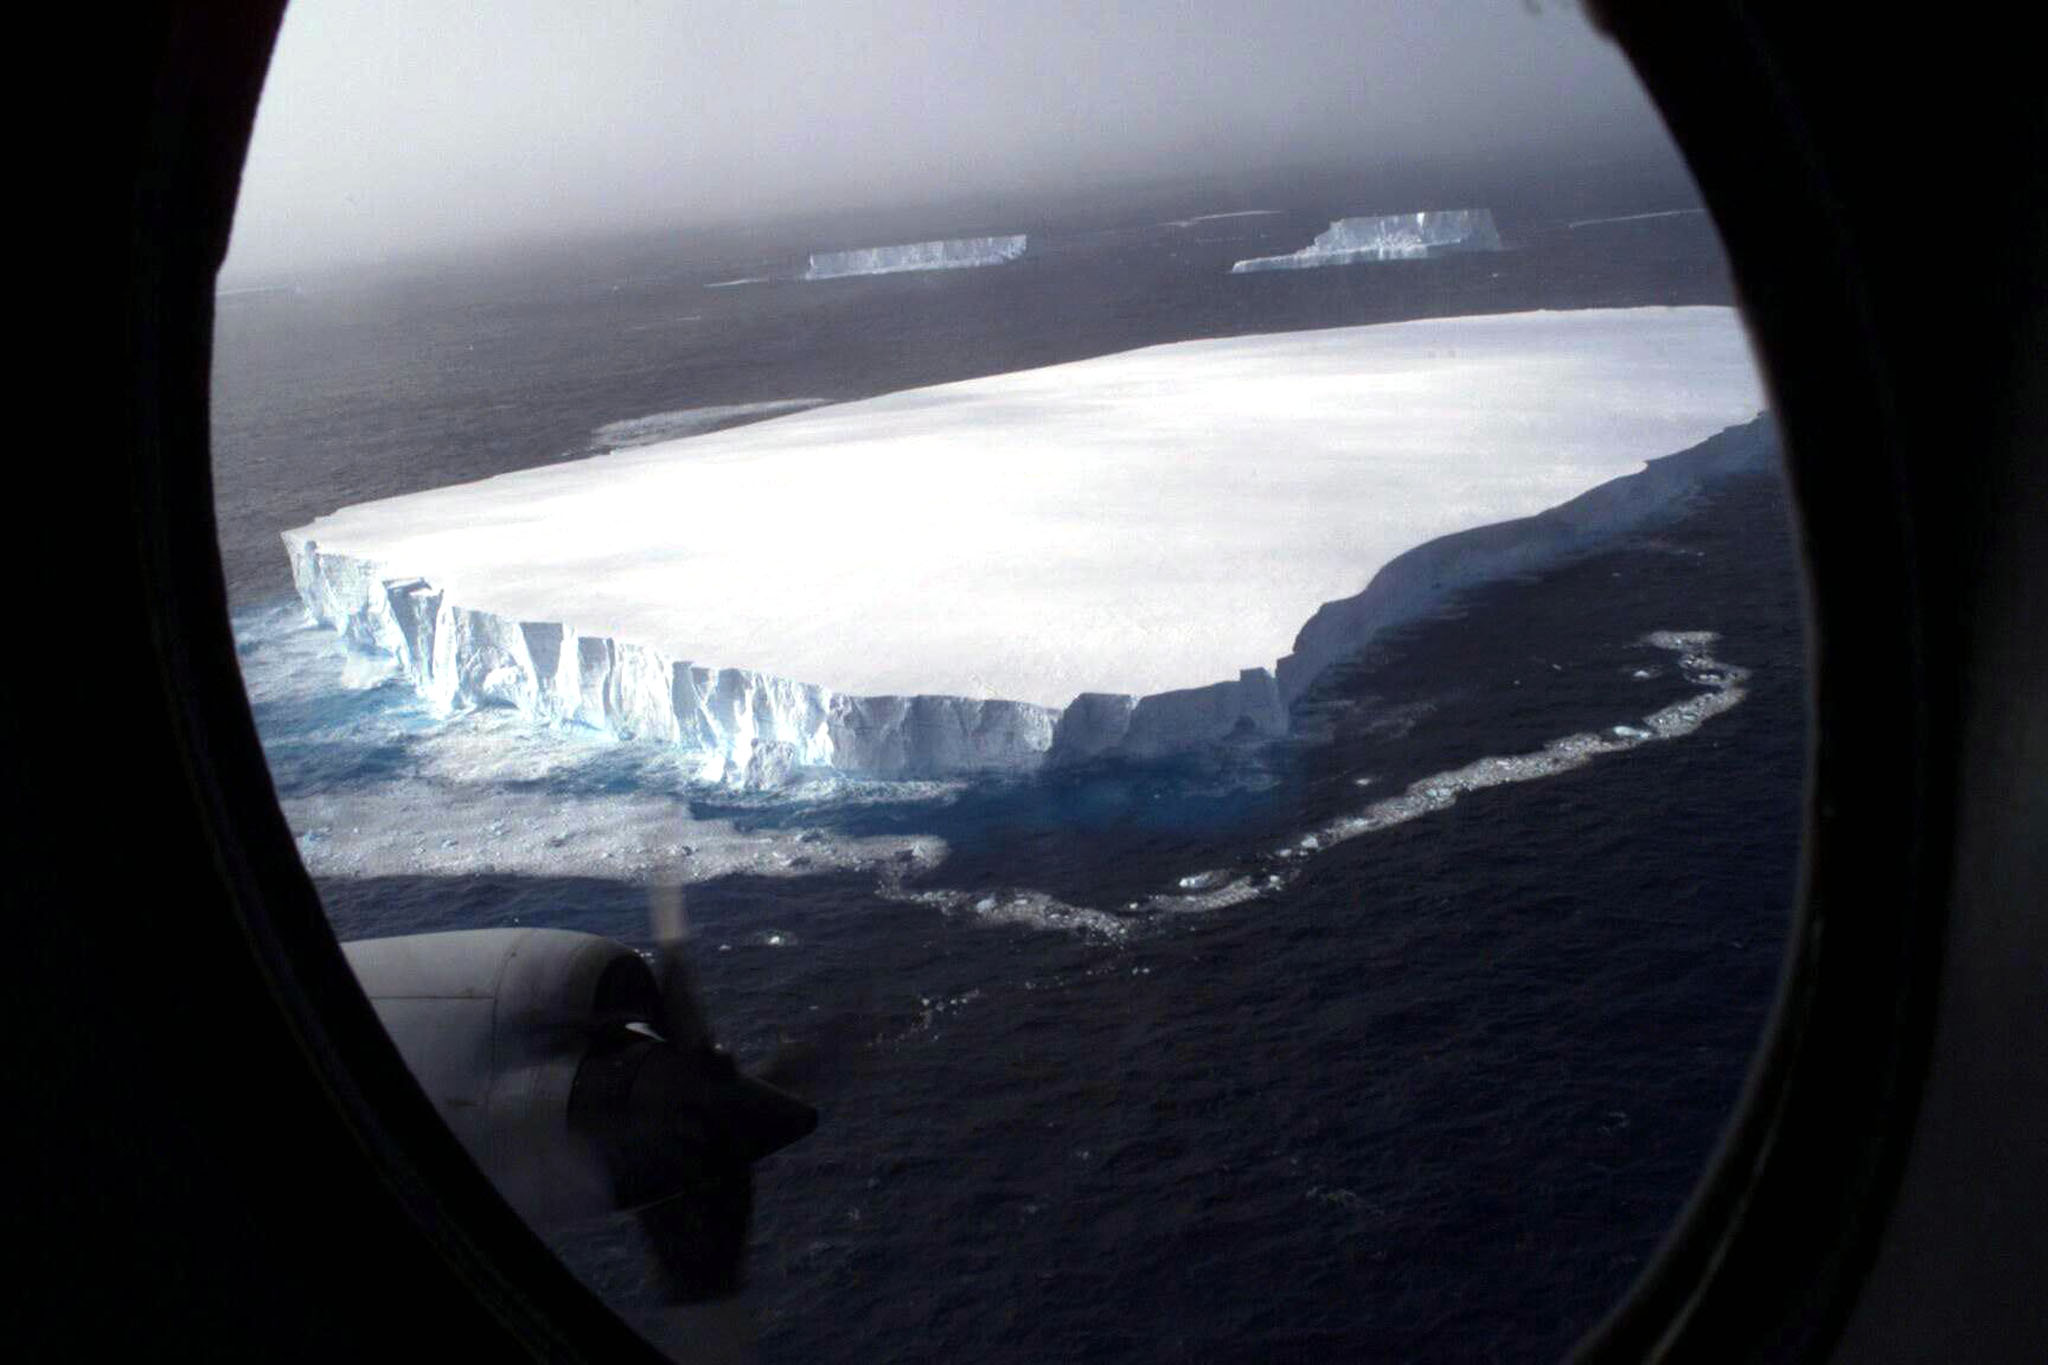 iceberg-geant-ocean-antarctique-banquise-glacier-fonte-des-glaces-rechauffement-climatique-chili-terre-de-feu-cap-horn-pole-sud